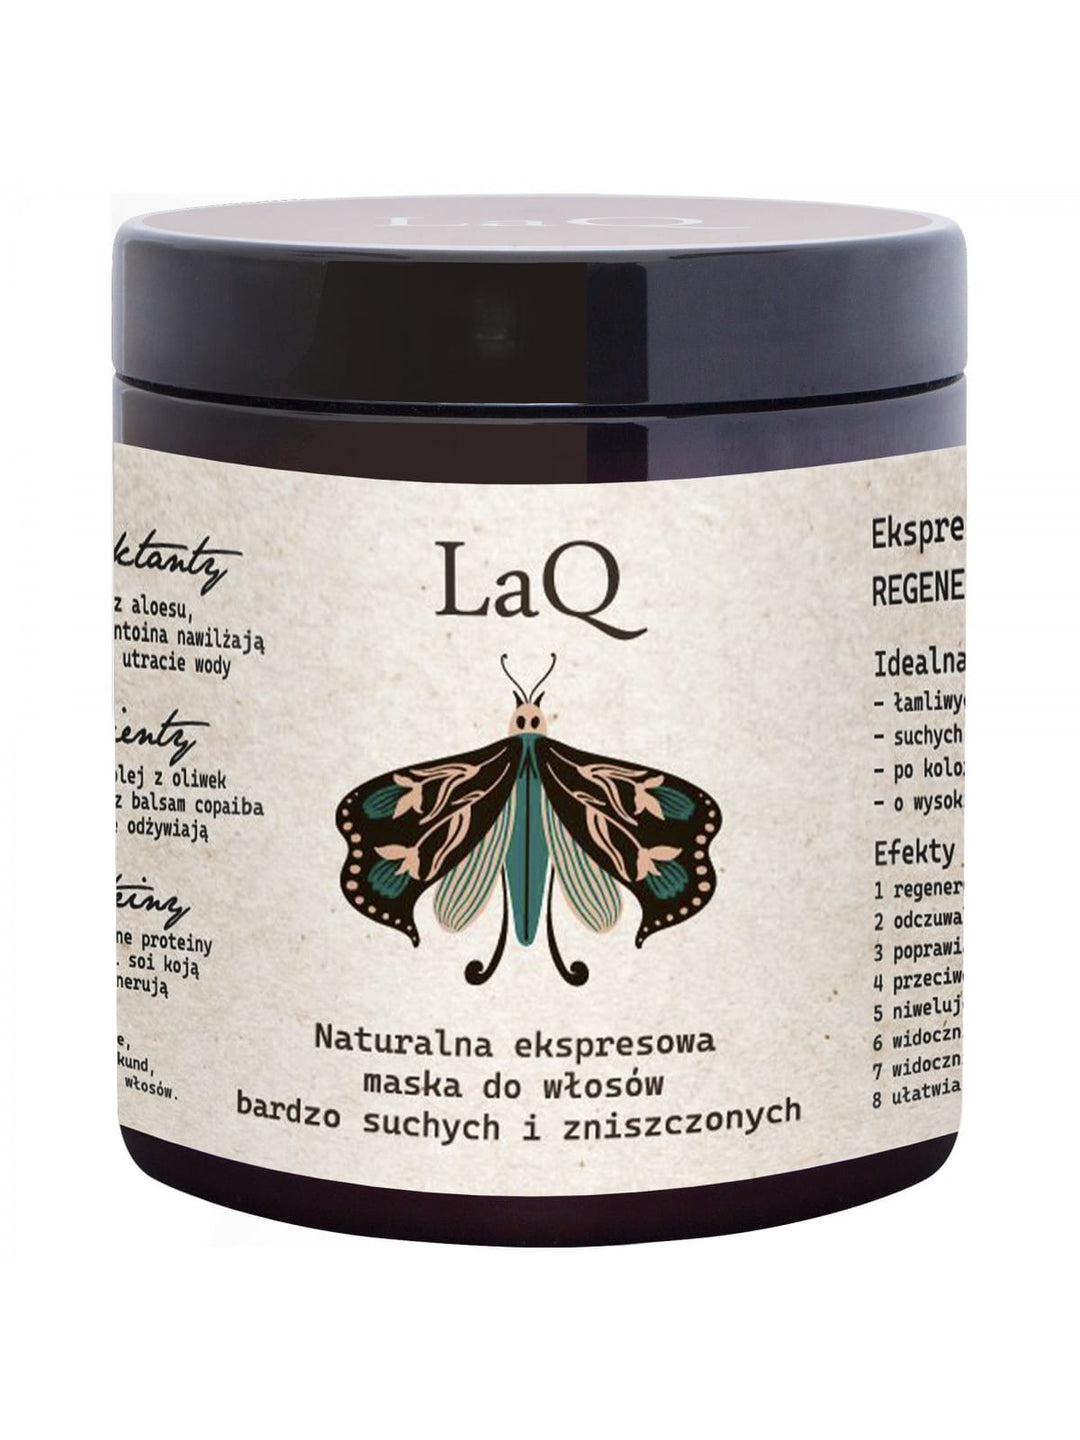 LAQ Naturalna ekspresowa maska do włosów bardzo suchych i zniszczonych 200ml